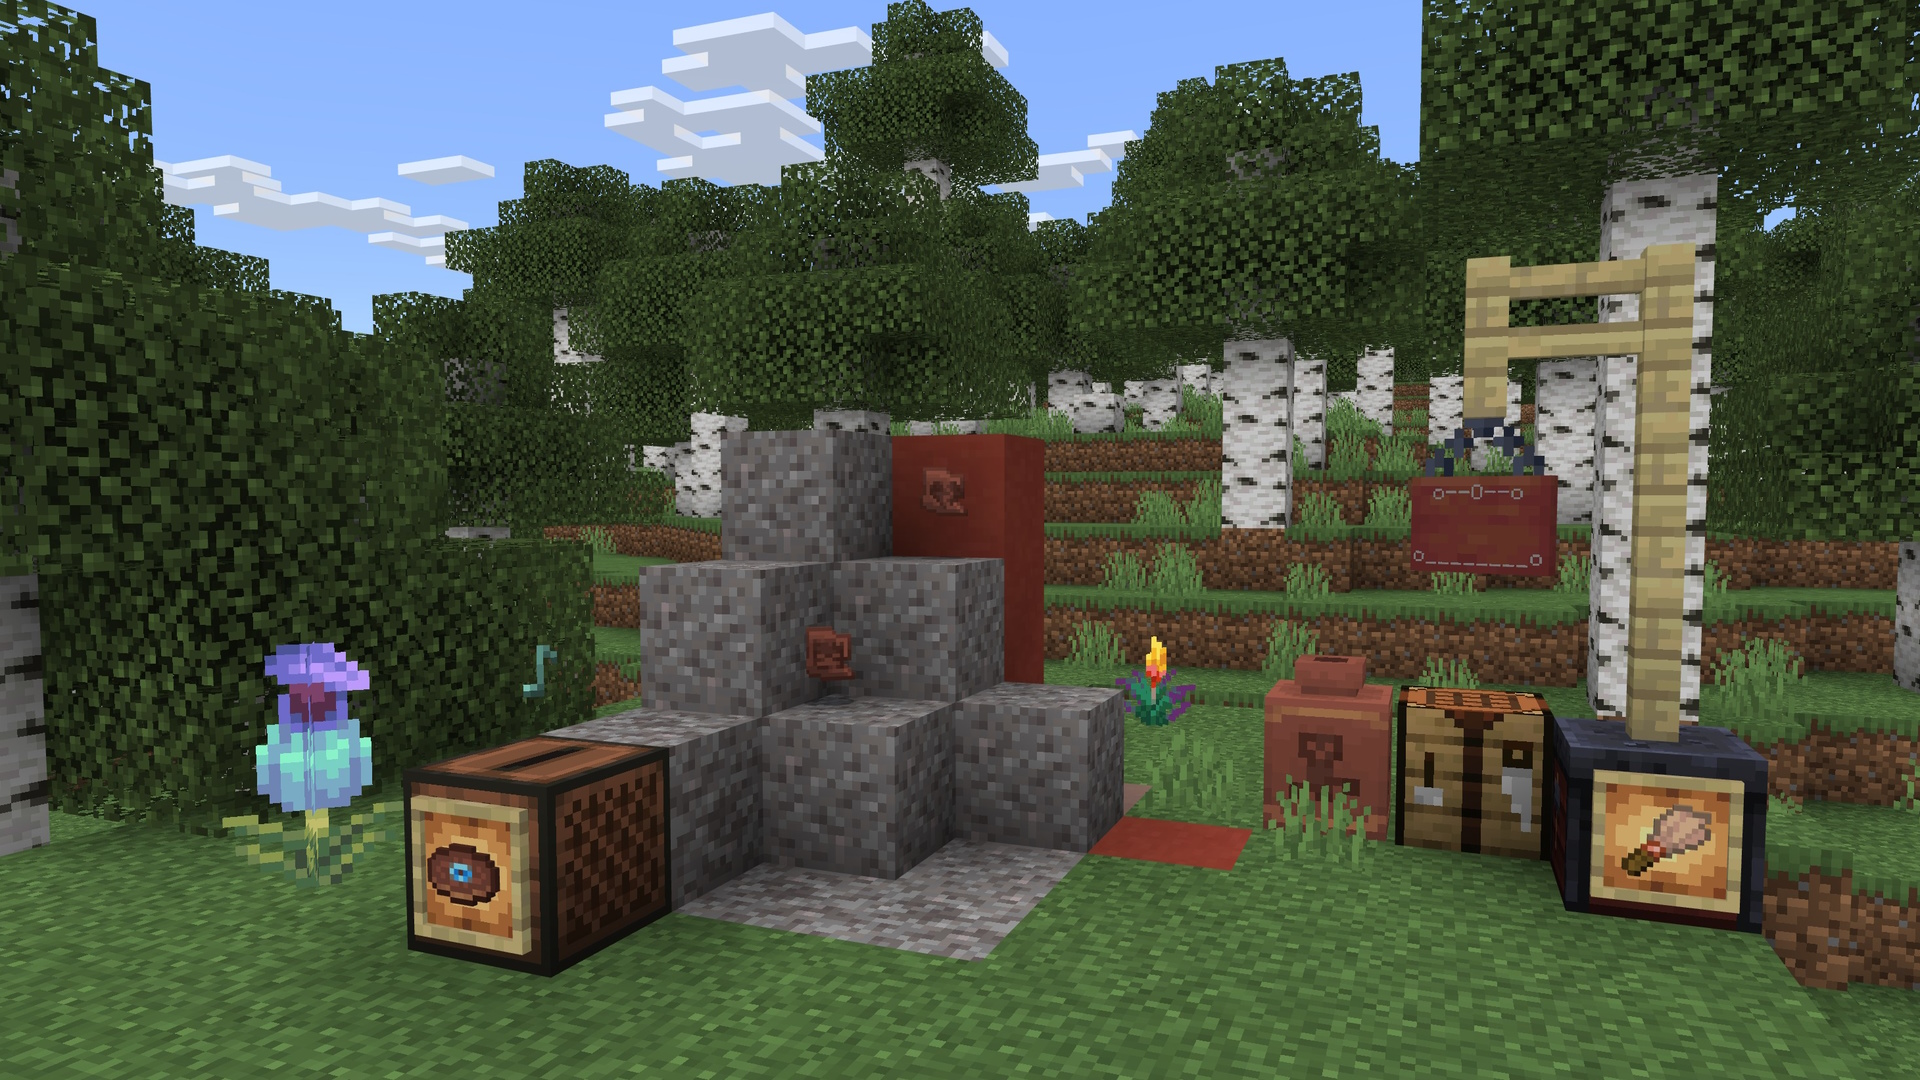 لقطة شاشة من Minecraft لموقع أطلال مدفون ، مع عناصر أثرية مختلفة حوله.